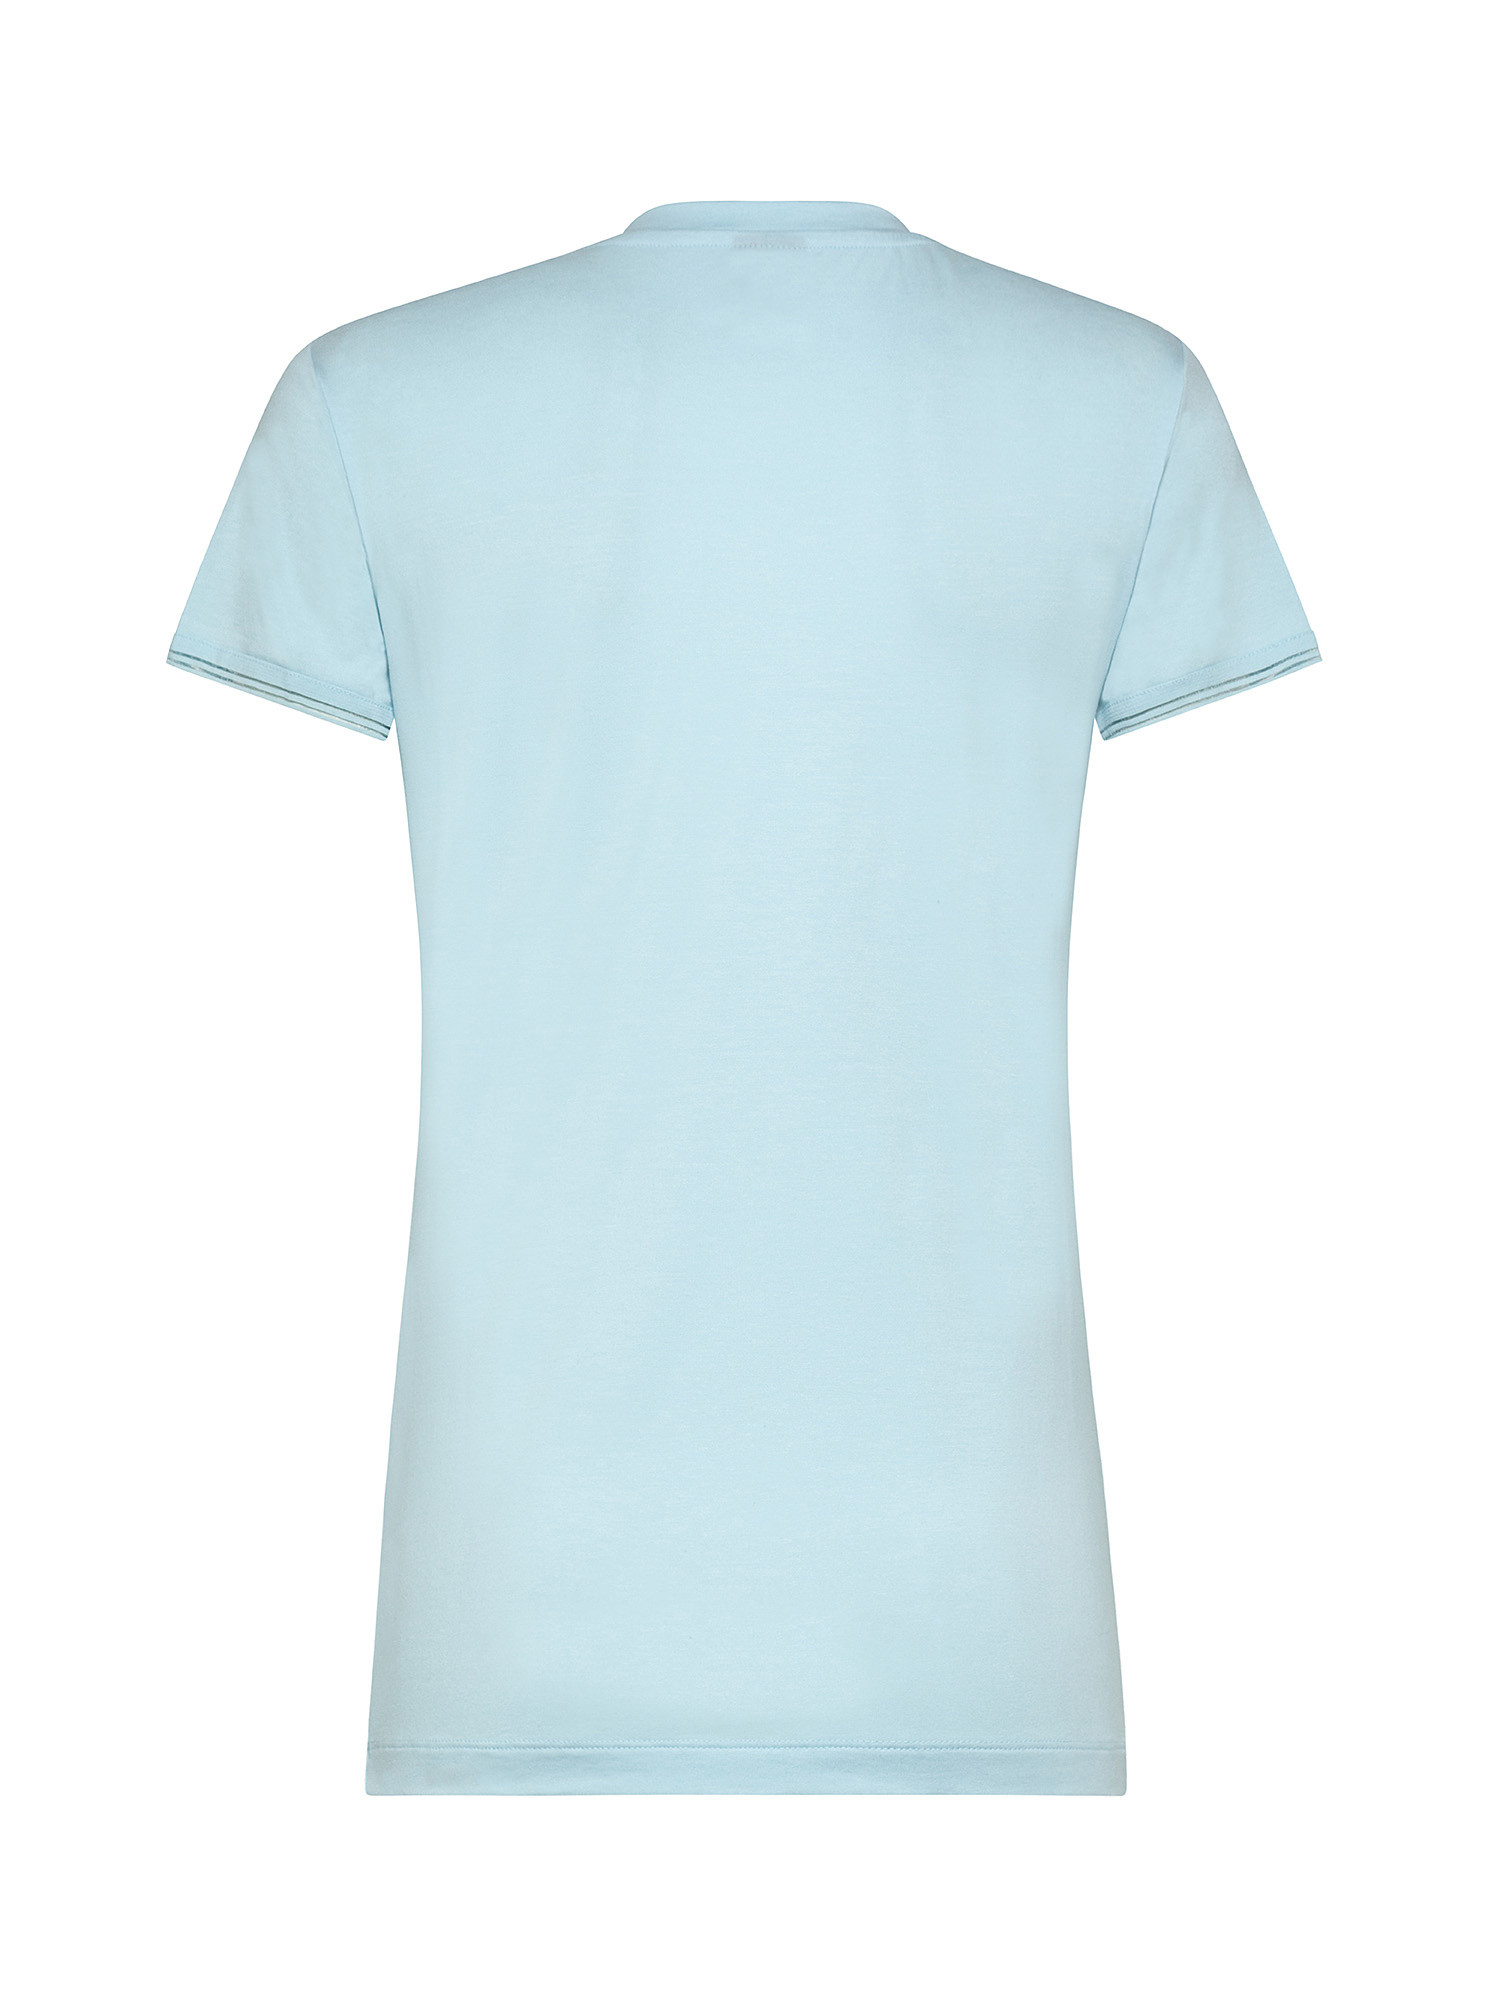 T-shirt con manica corta, Azzurro, large